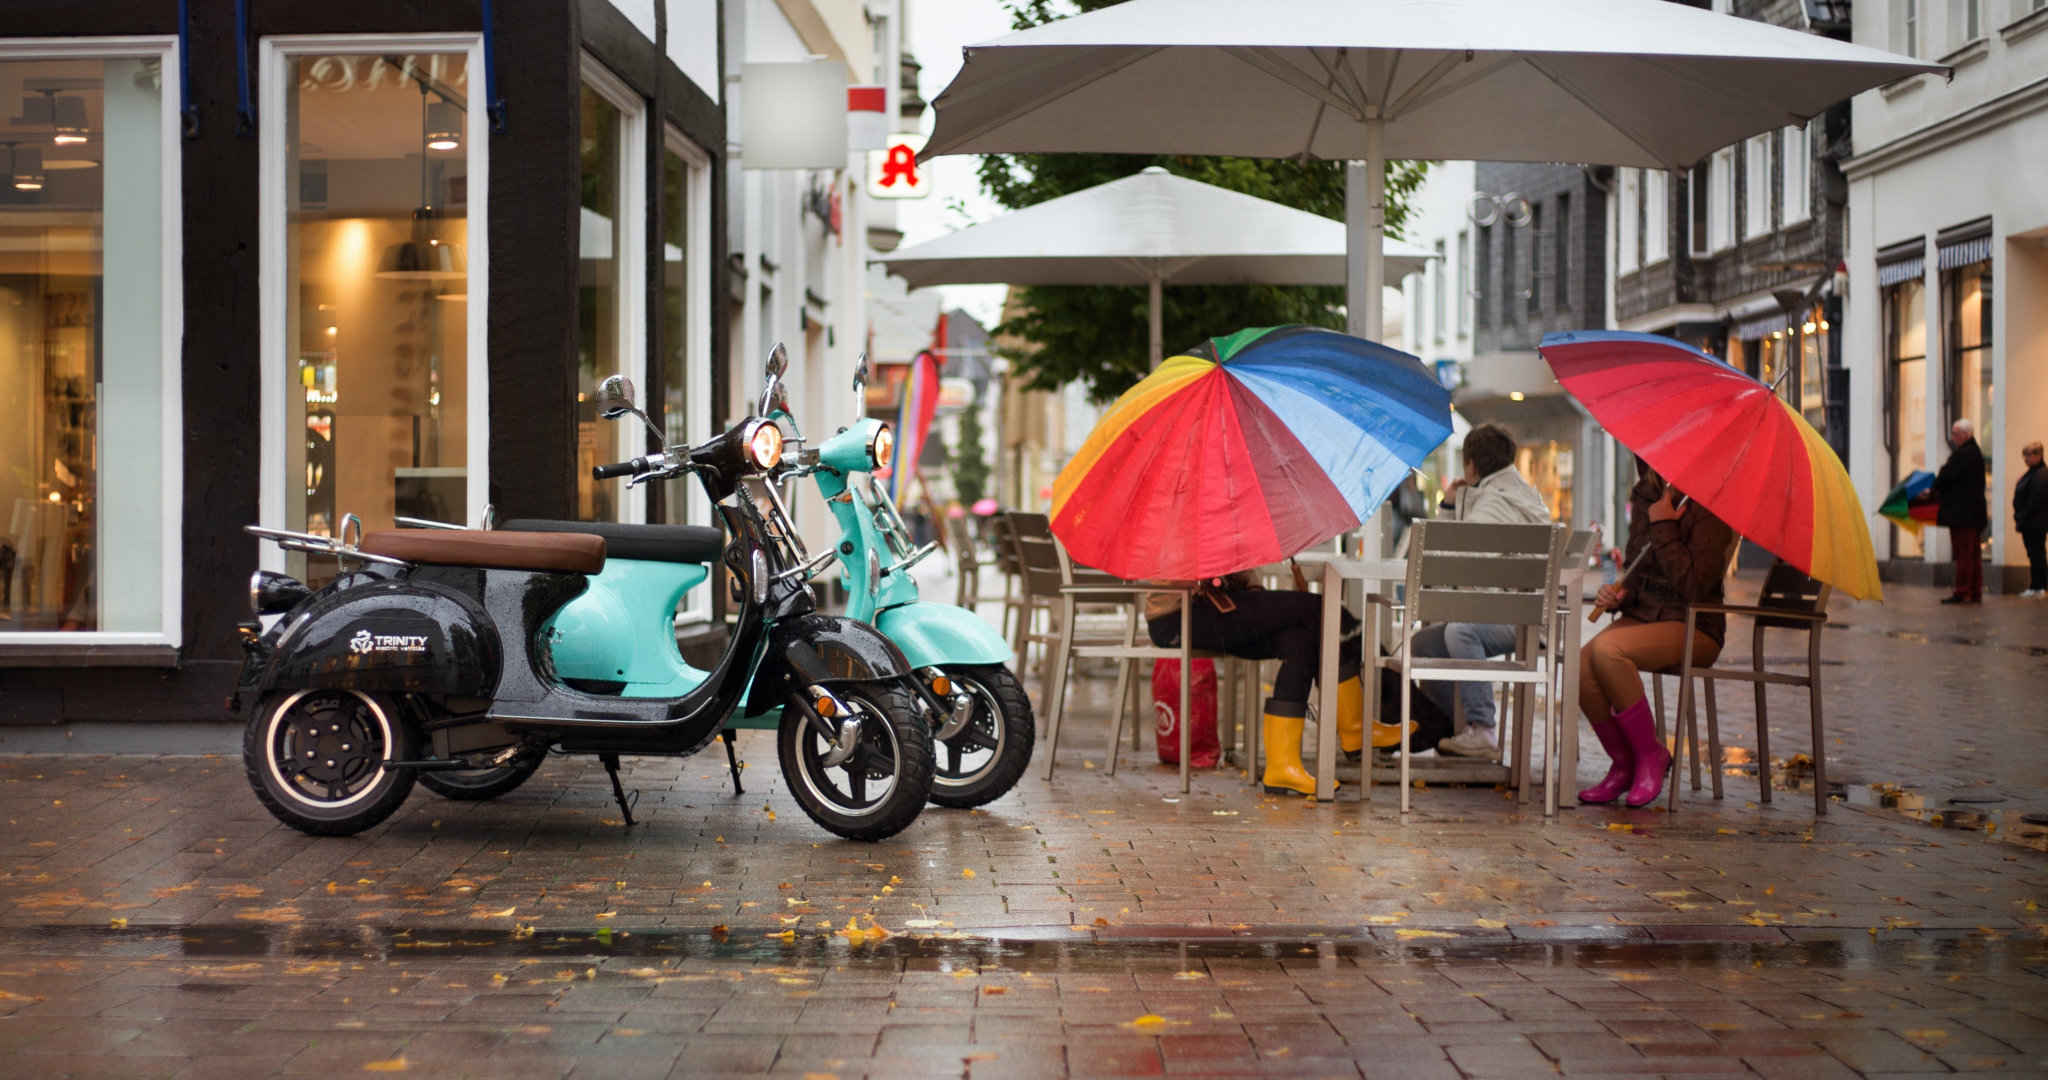 下雨的城市街头，在餐厅门前躲雨的路人场景桌面壁纸-